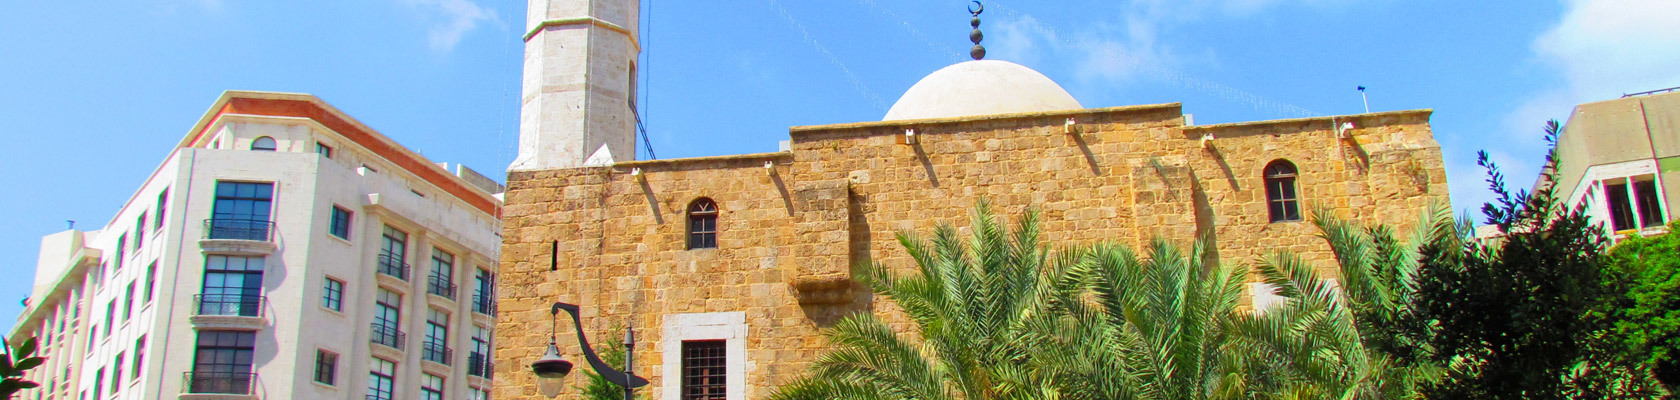 Amir Assaf Mosque